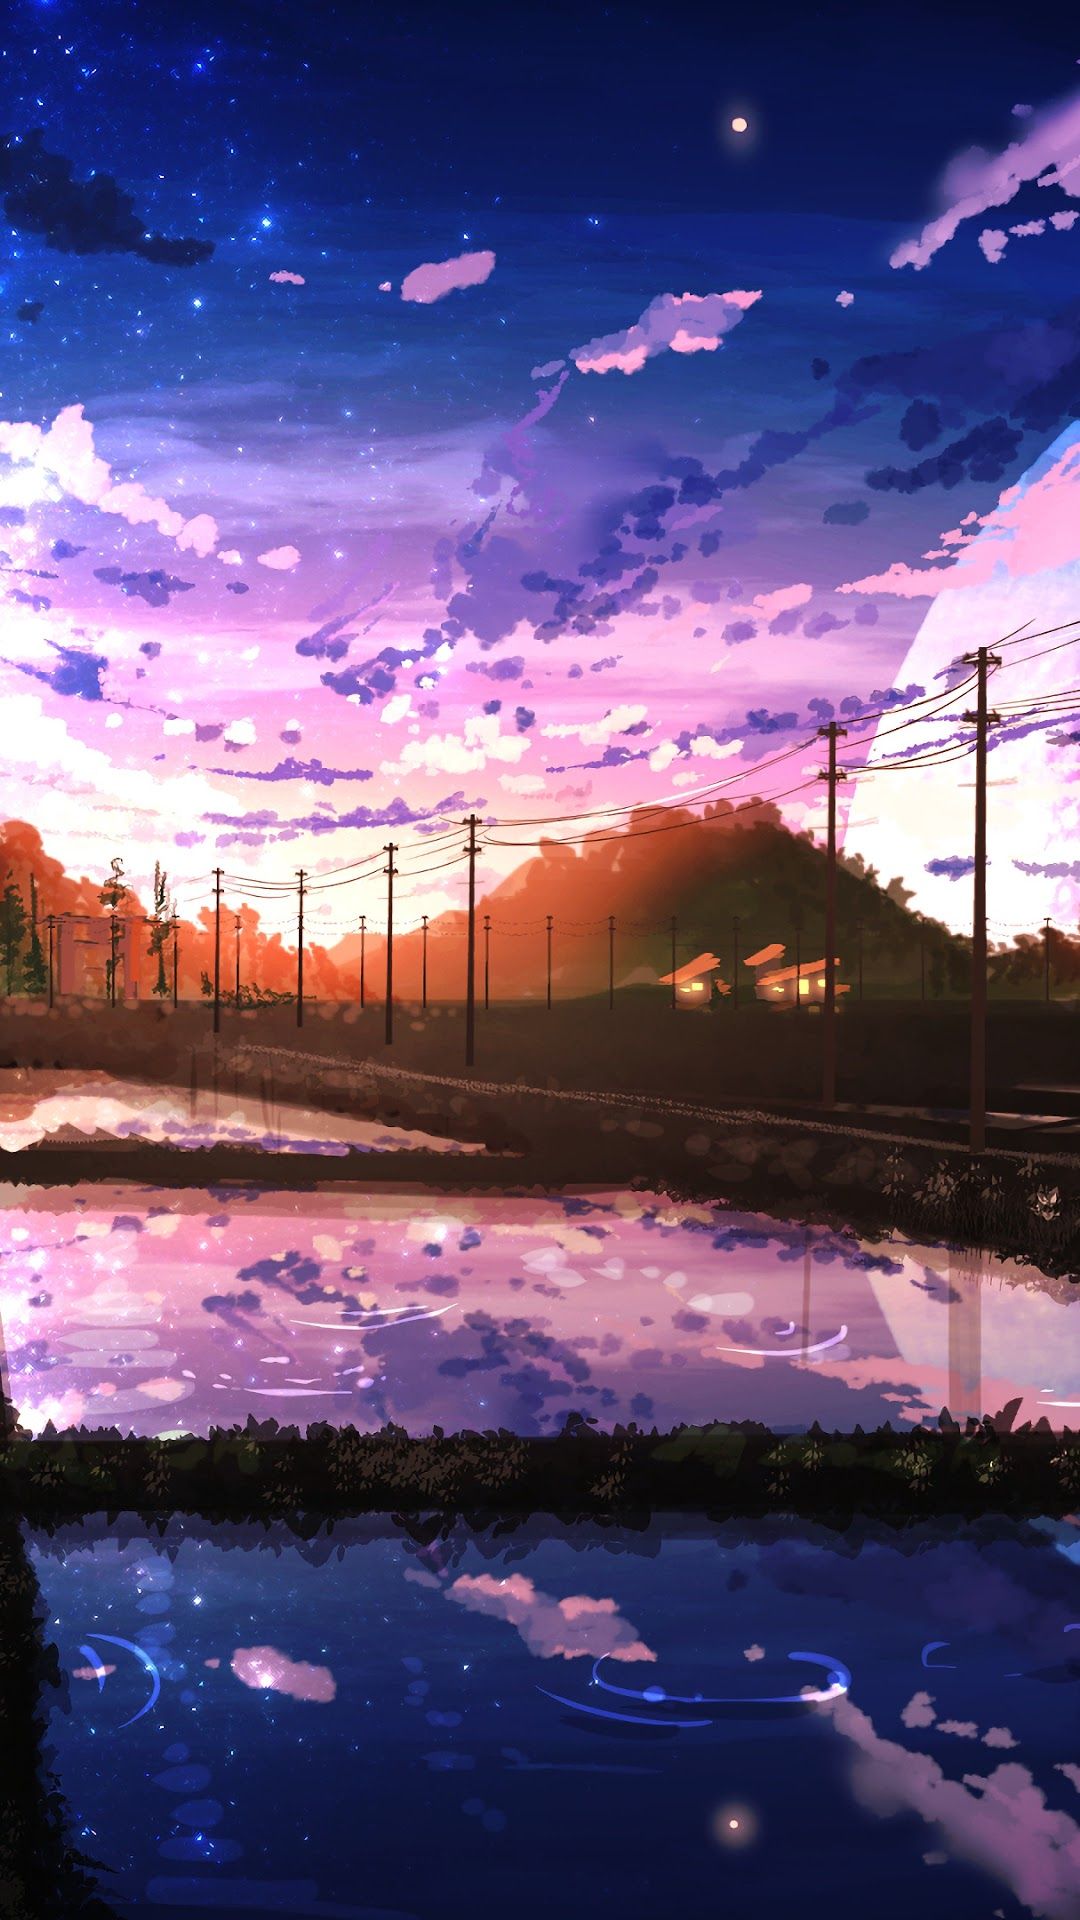 Anime Environment: Cùng khám phá thế giới của anime thông qua Anime Environment. Với những cảnh quan sống động, có thể bạn sẽ cảm thấy như mình đang sống trong một thế giới hoạt hình. Dành cho những tín đồ anime đích thực.